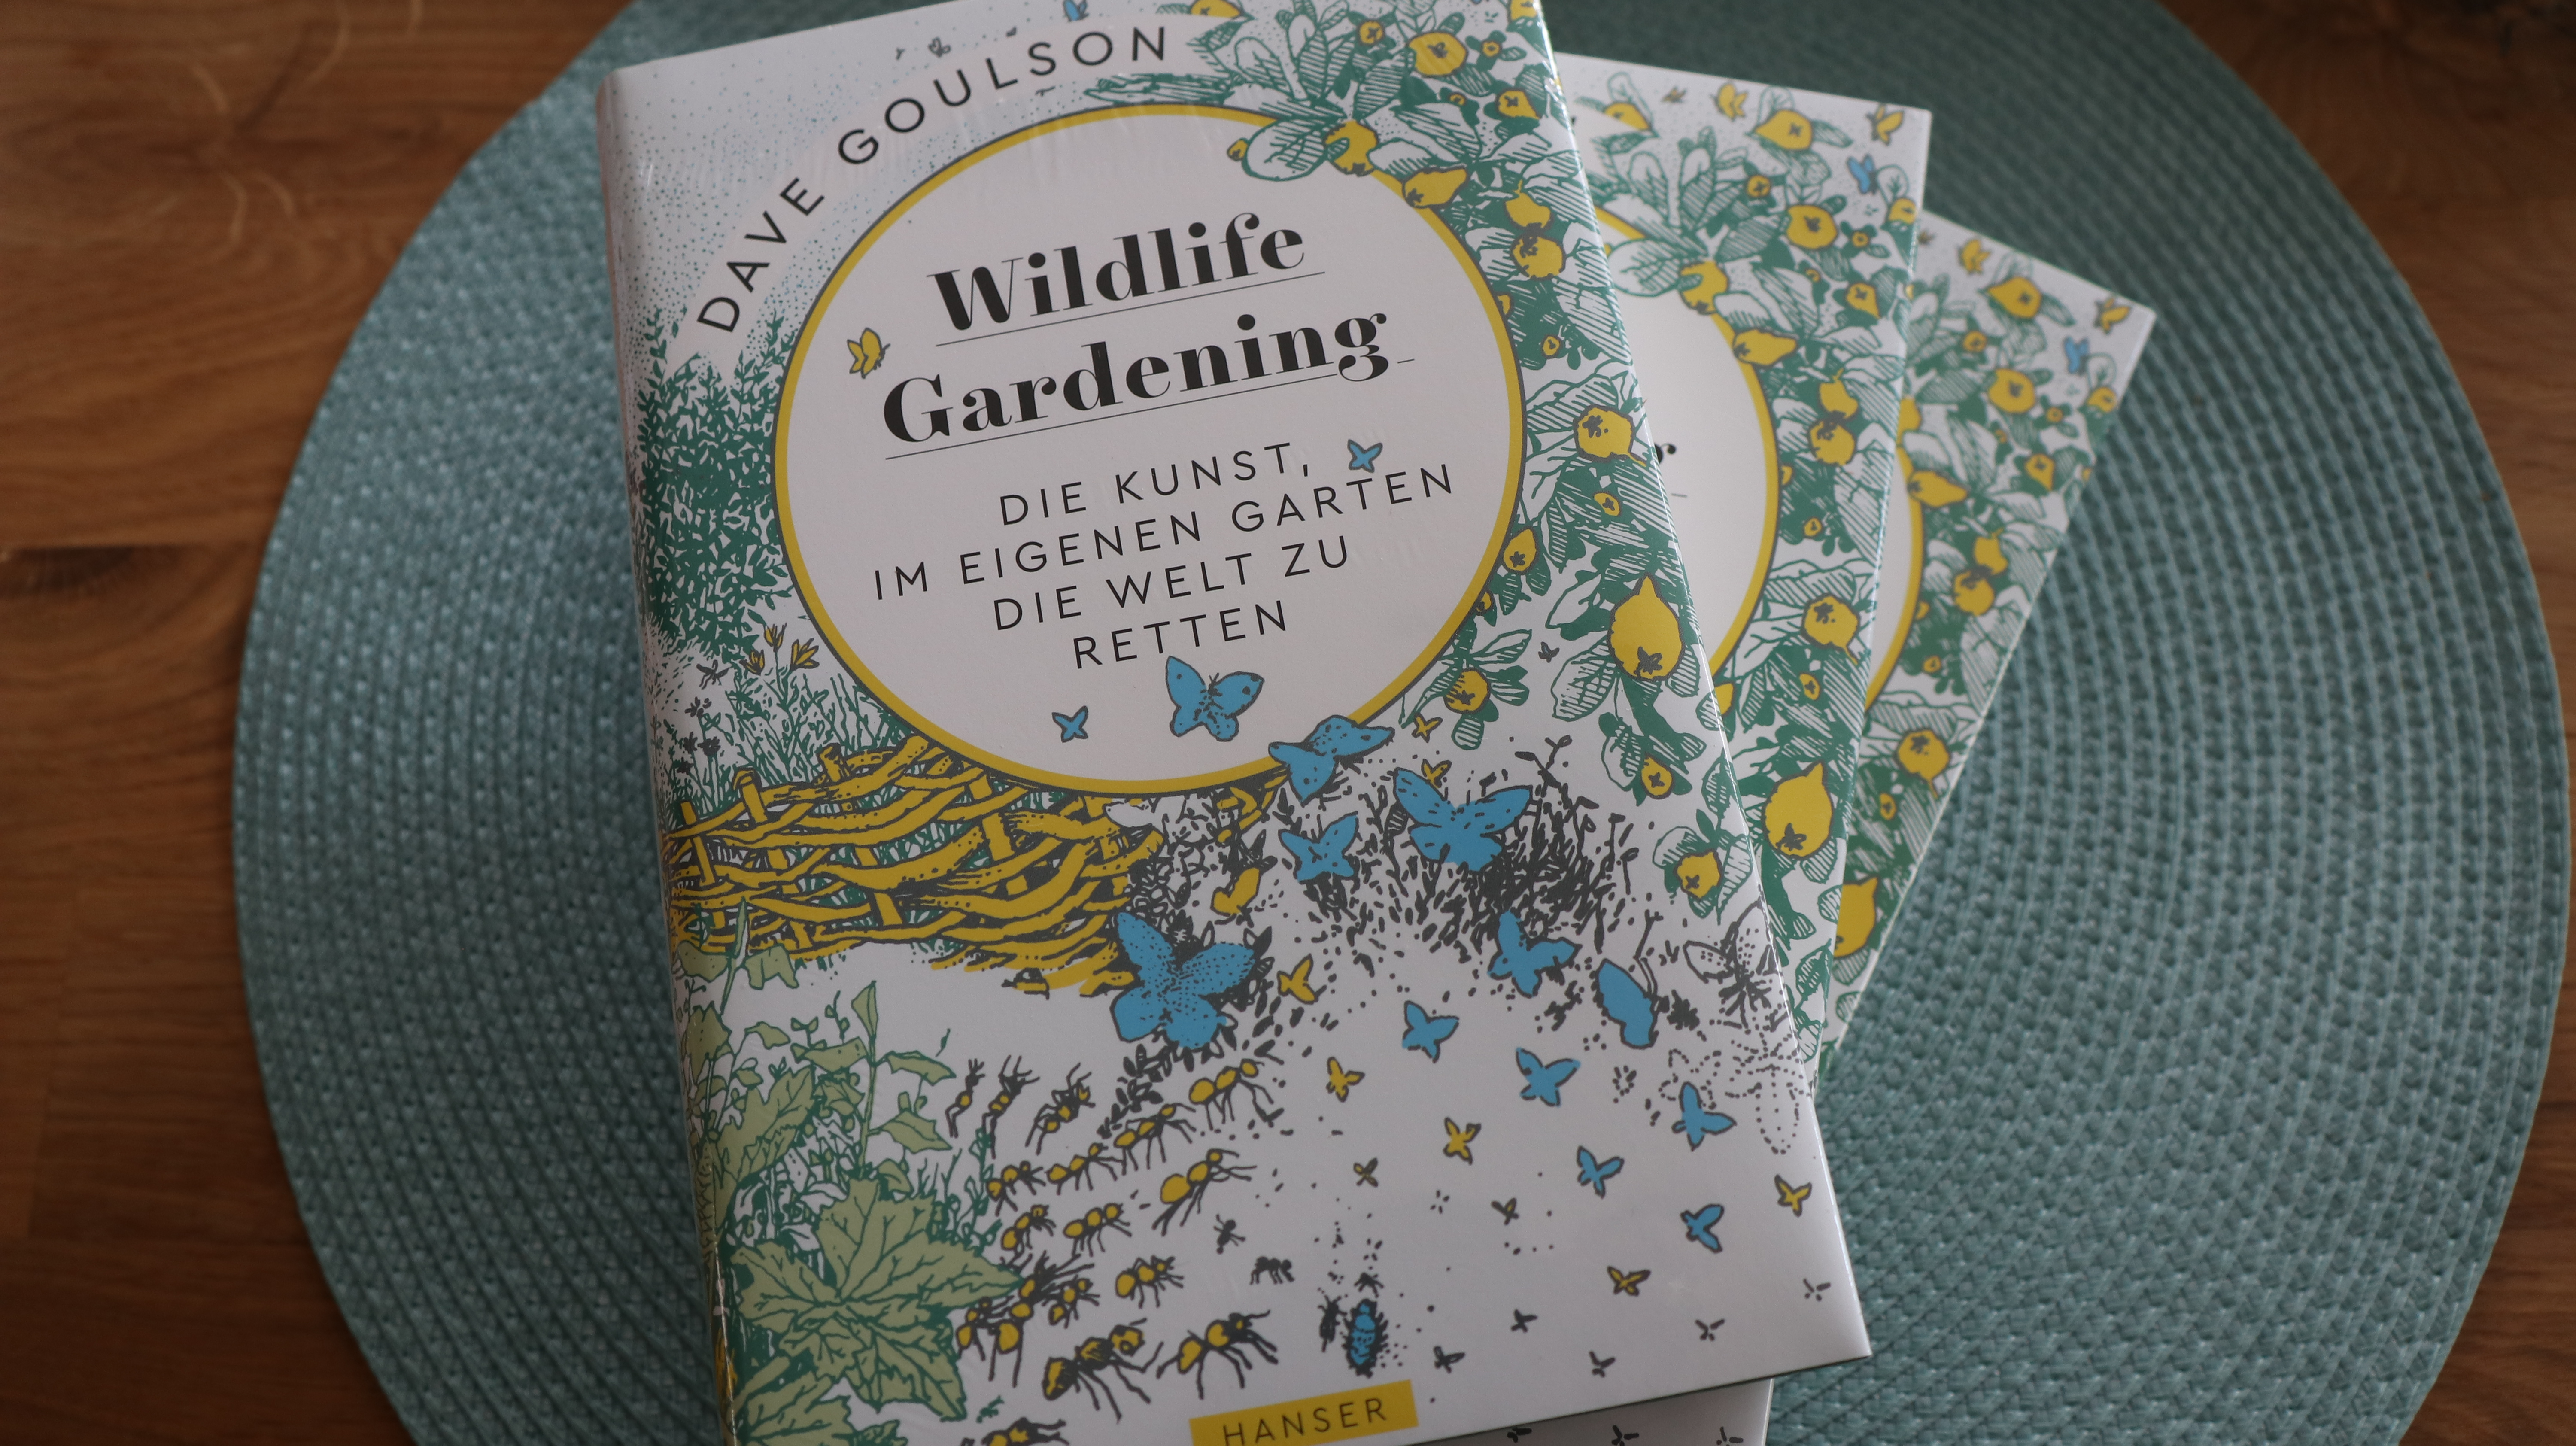 Buchtipp: Wildbienenkenner Goulsons „Wildlife Gardening“